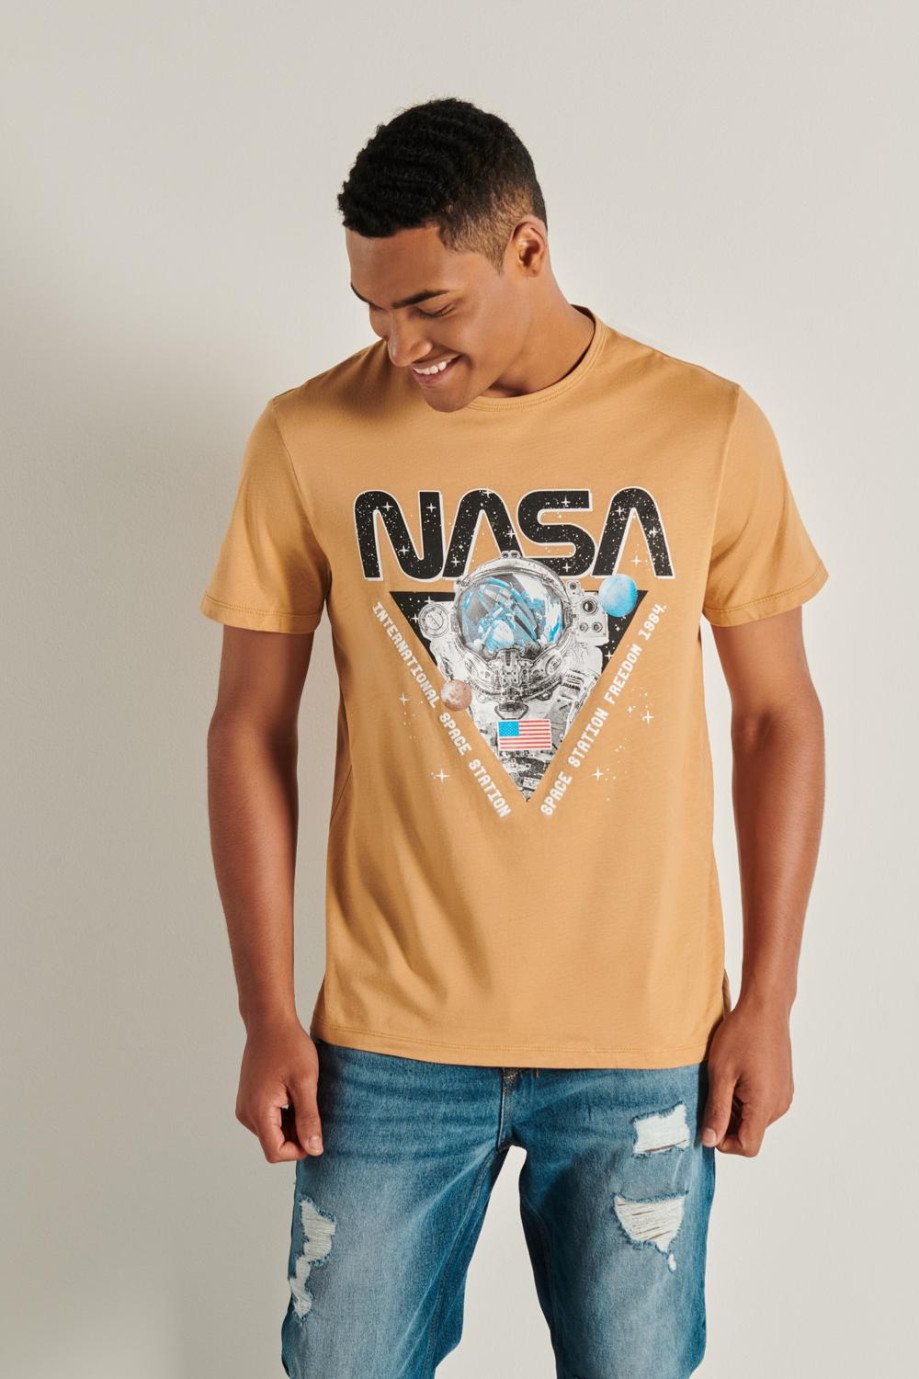 Camiseta en algodón kaky clara con manga corta y diseño de NASA